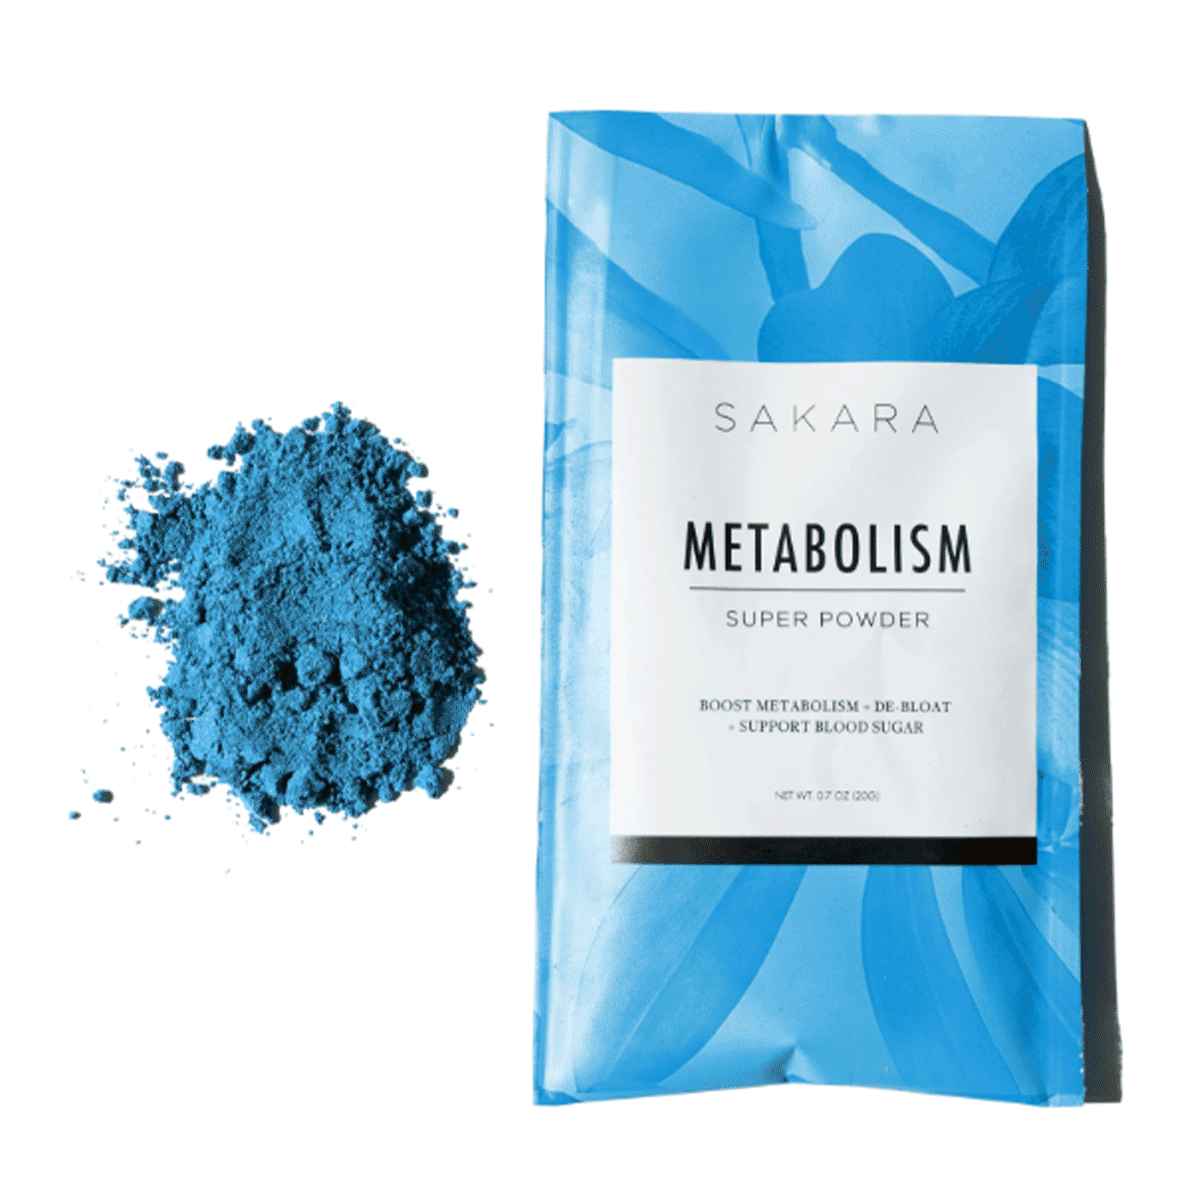 sakara-life-metabolism-super-powder-review-283148-1571332272068-square